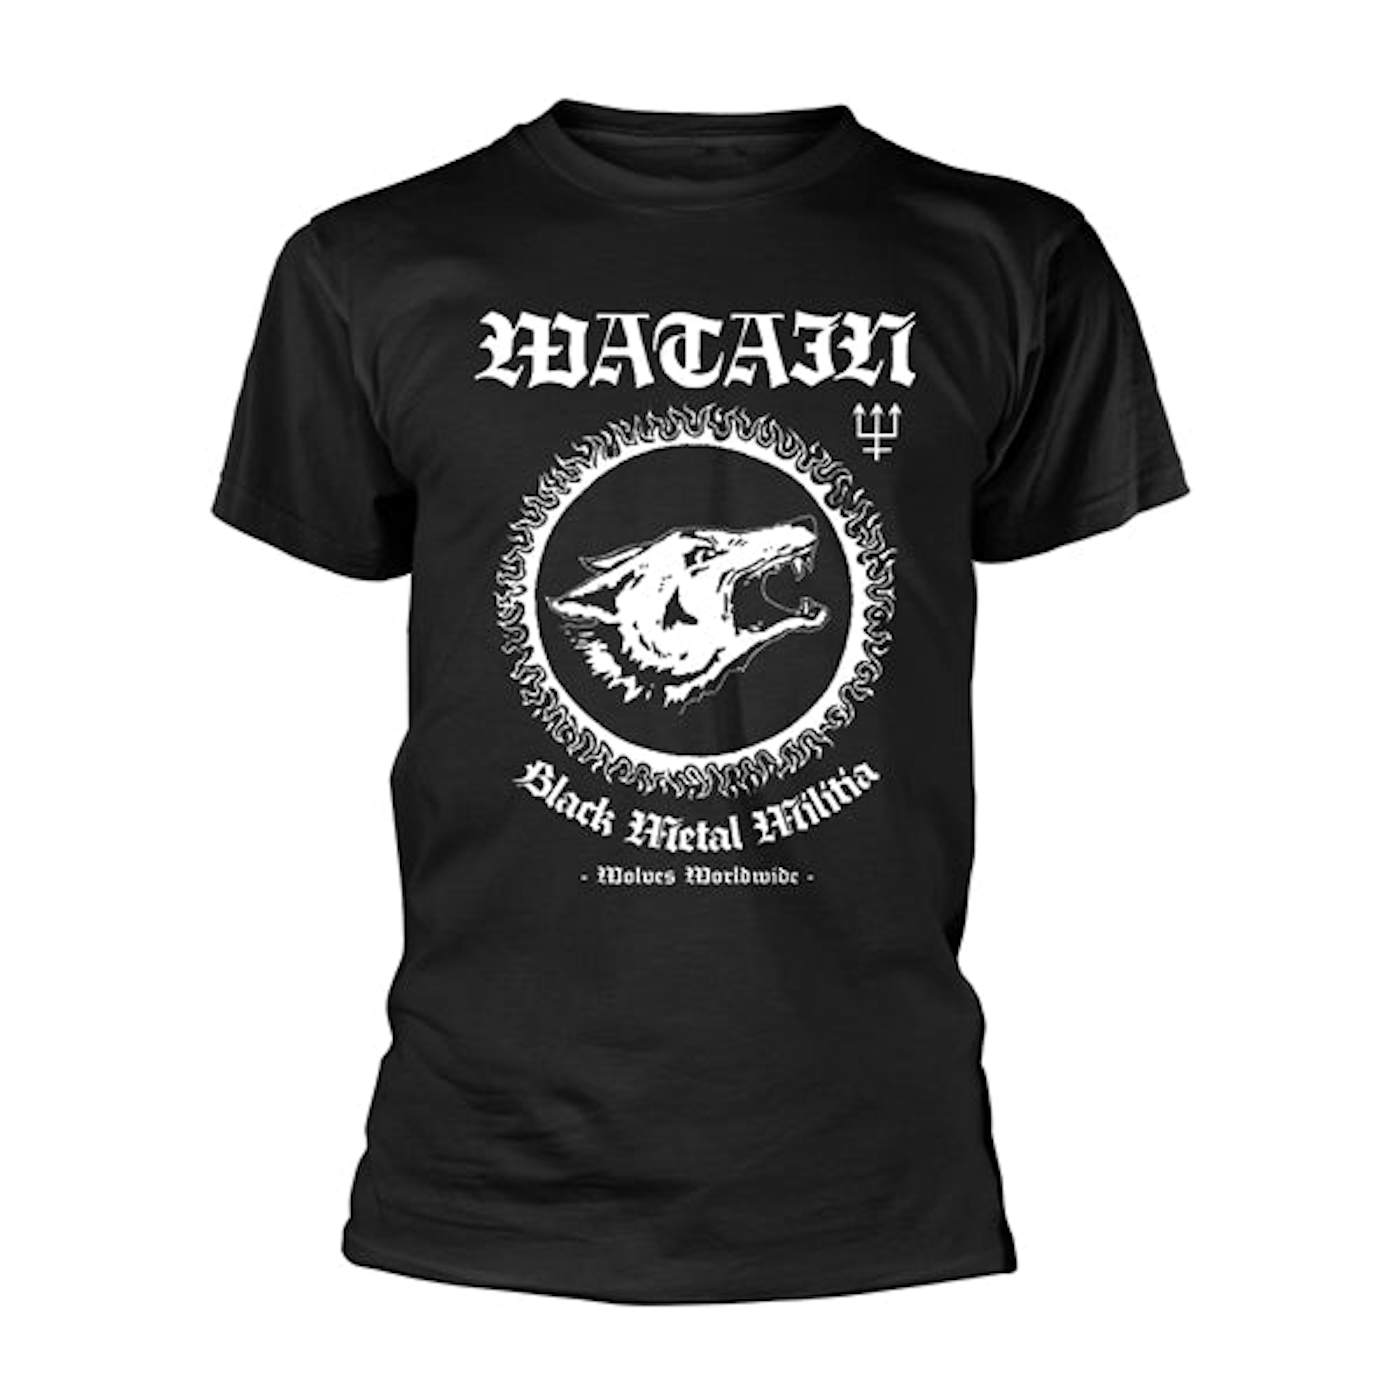 Watain T Shirt - Black Metal Militia